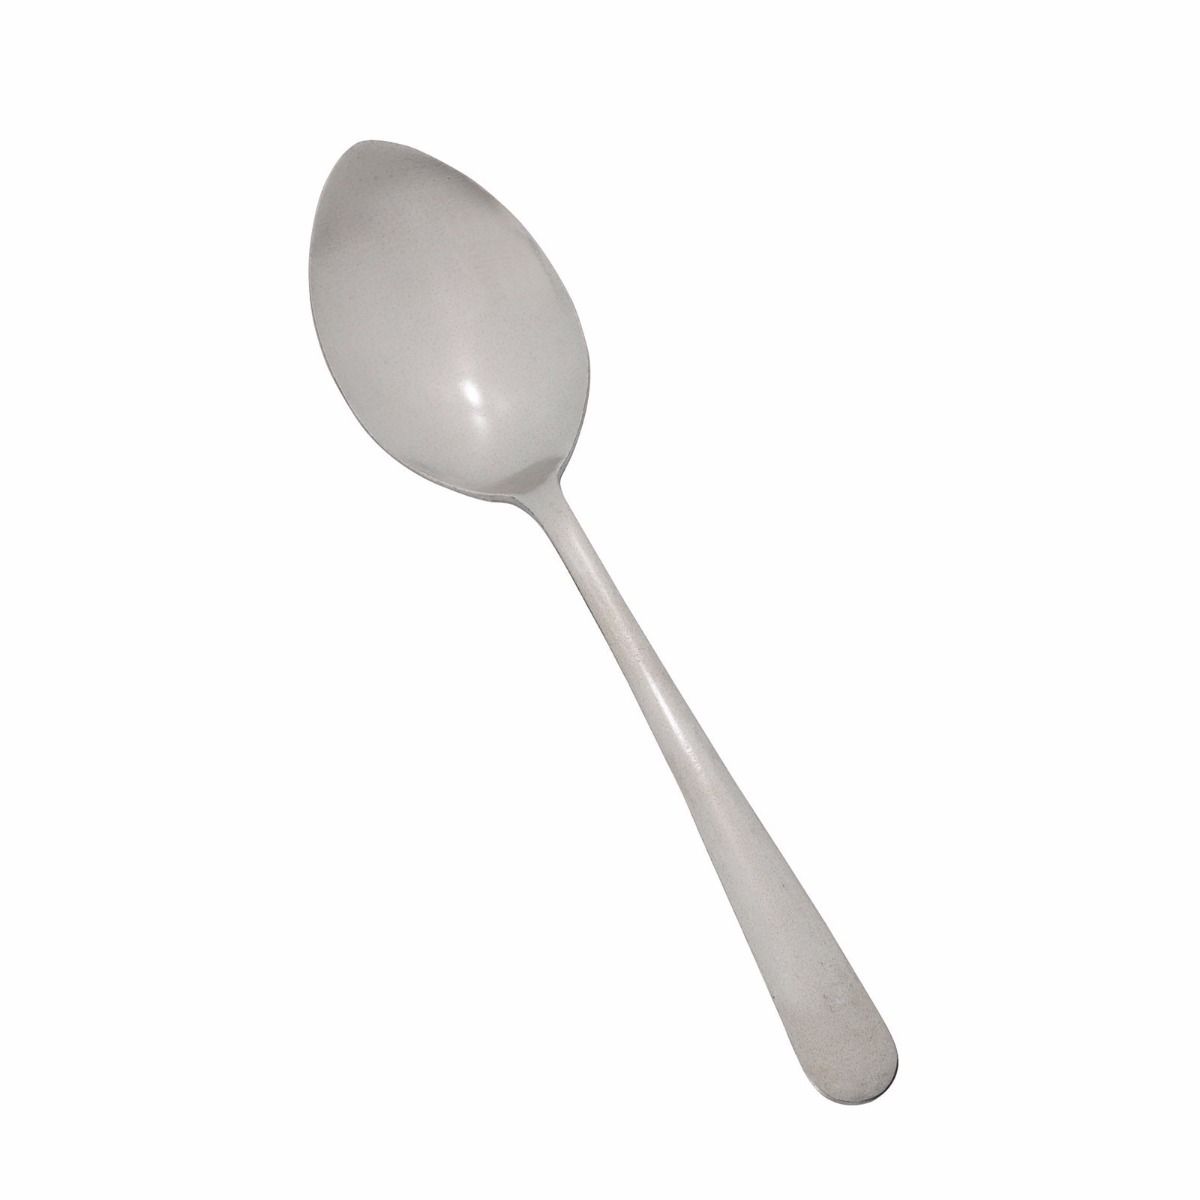 WinCo 0002-09 Demitasse Spoon dozen for sale online 